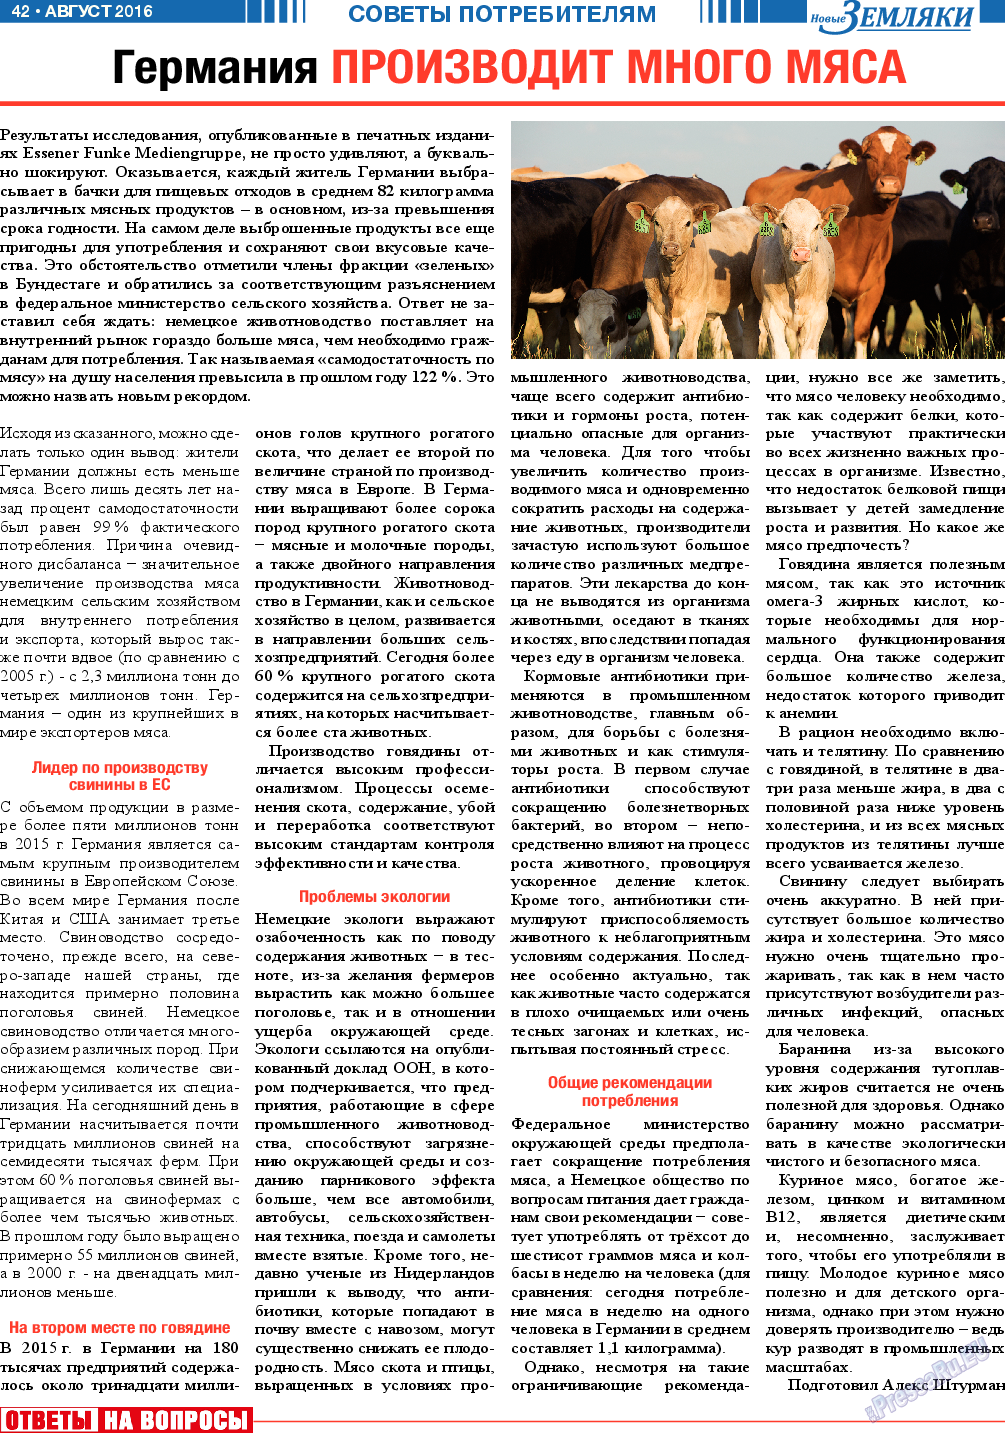 Новые Земляки (газета). 2016 год, номер 8, стр. 42